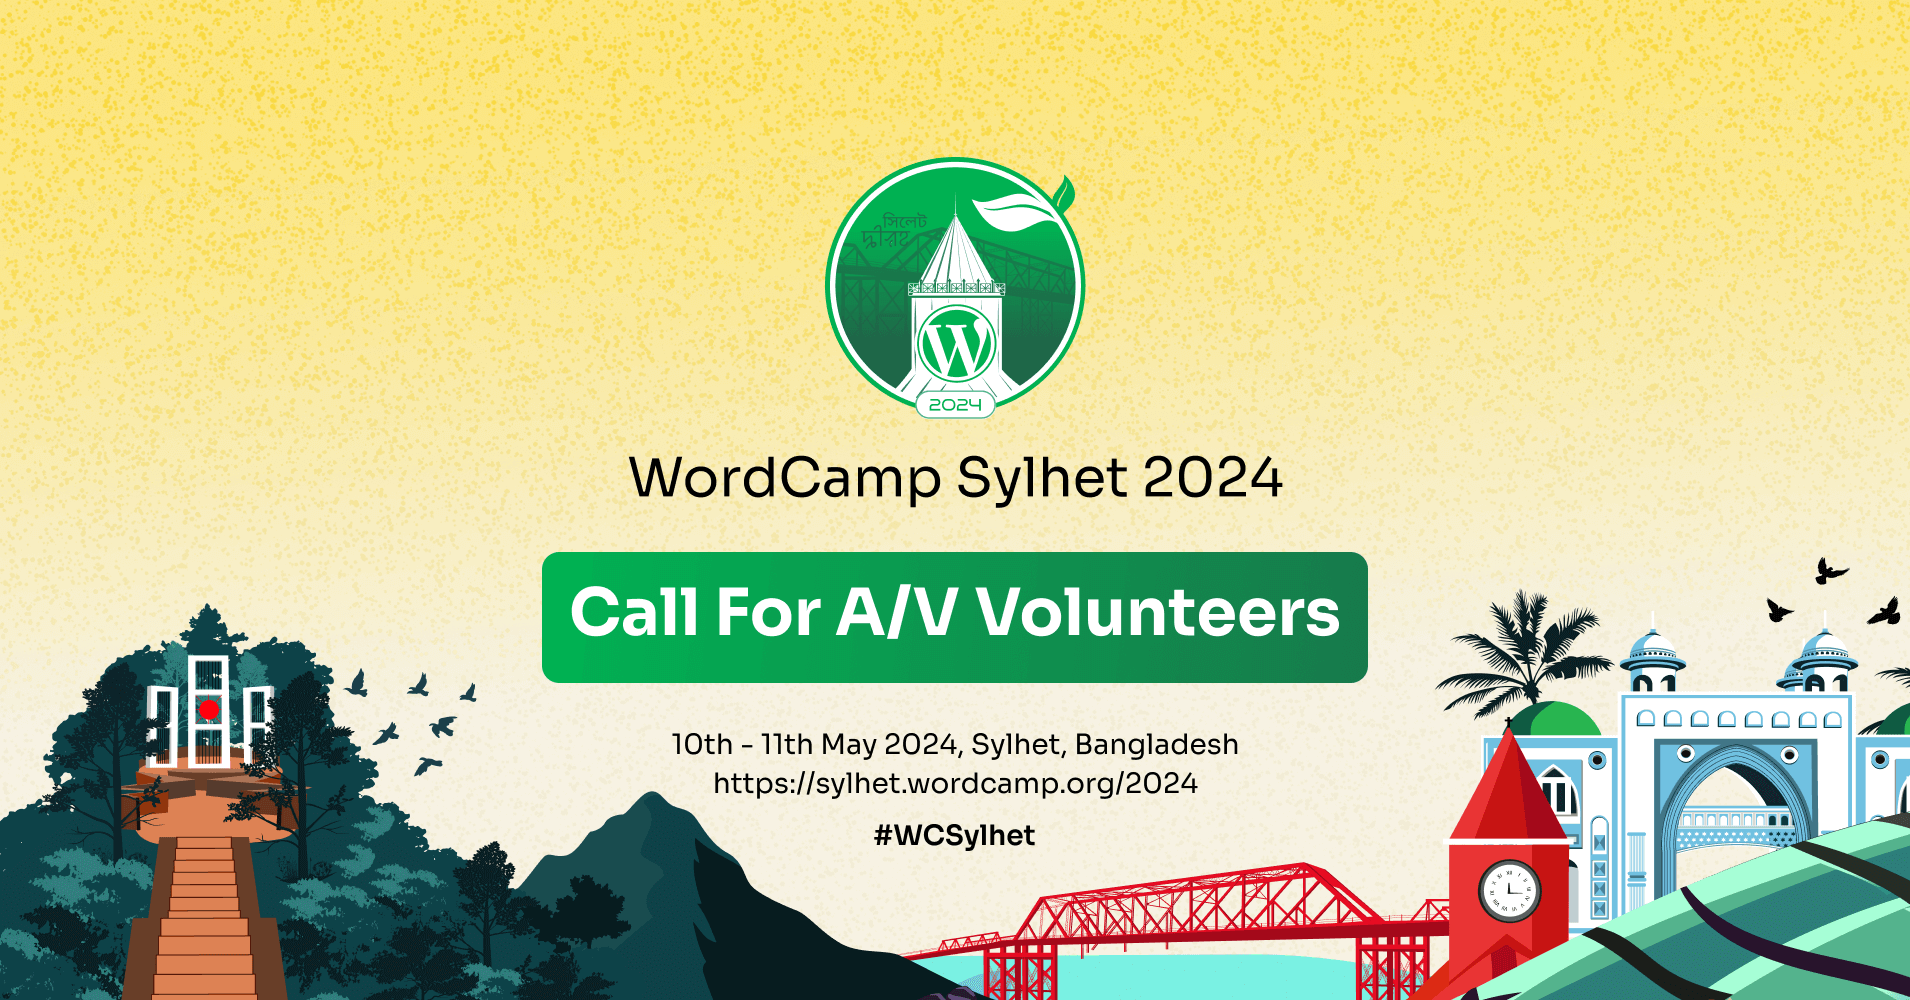 Call for AV volunteers